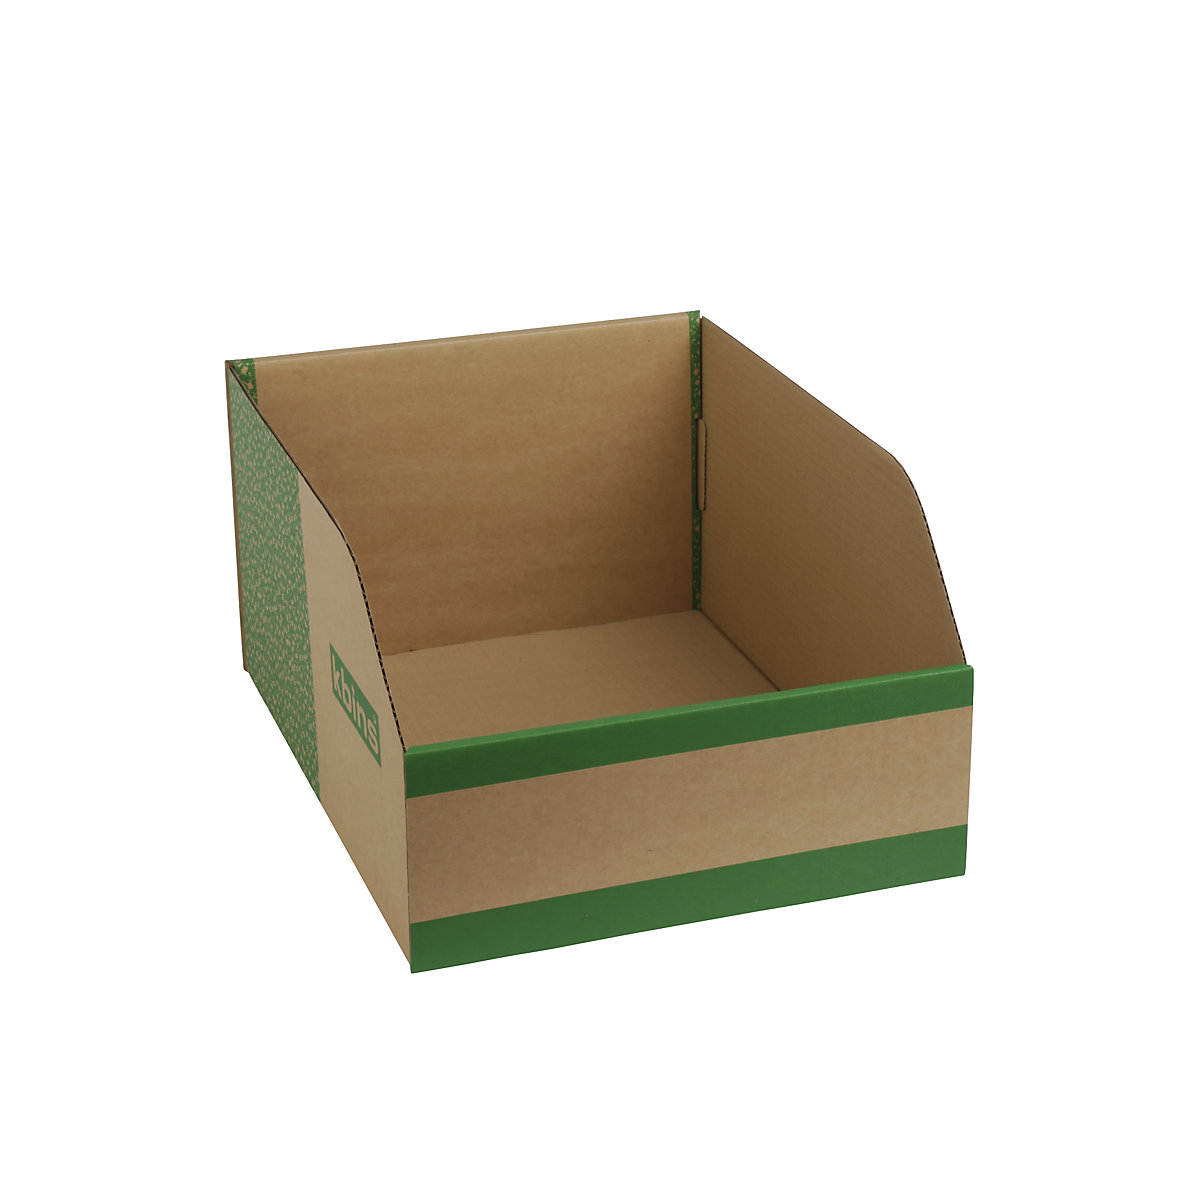 Karton állványdoboz, egyrétegű és összehajtható kivitel, cs. e. 25 db, h x szé x ma 400x300x200 mm-6